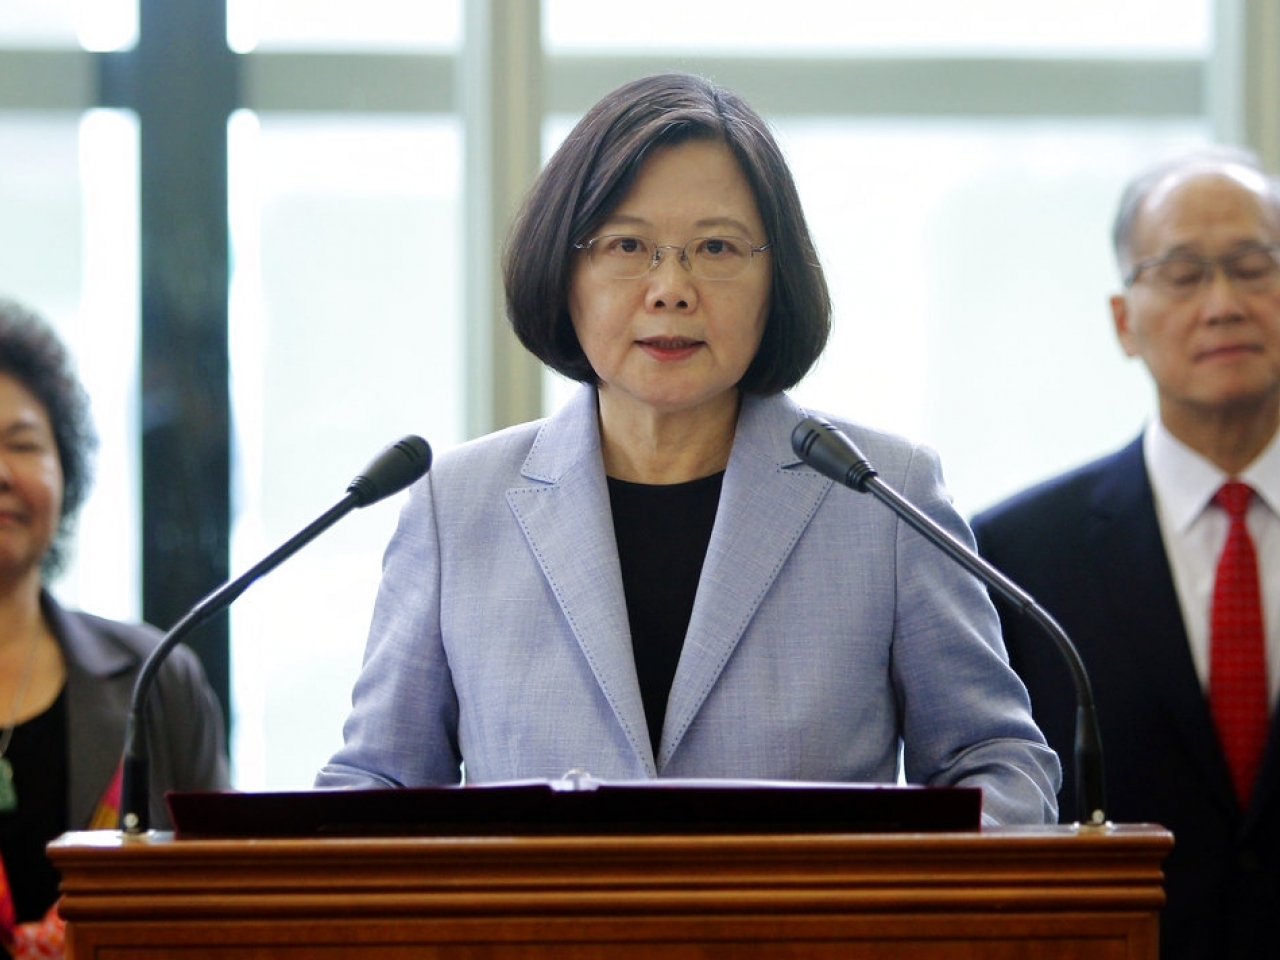 Taiwán ejecuta al primer condenado a muerte desde inicio de mandato presidencial